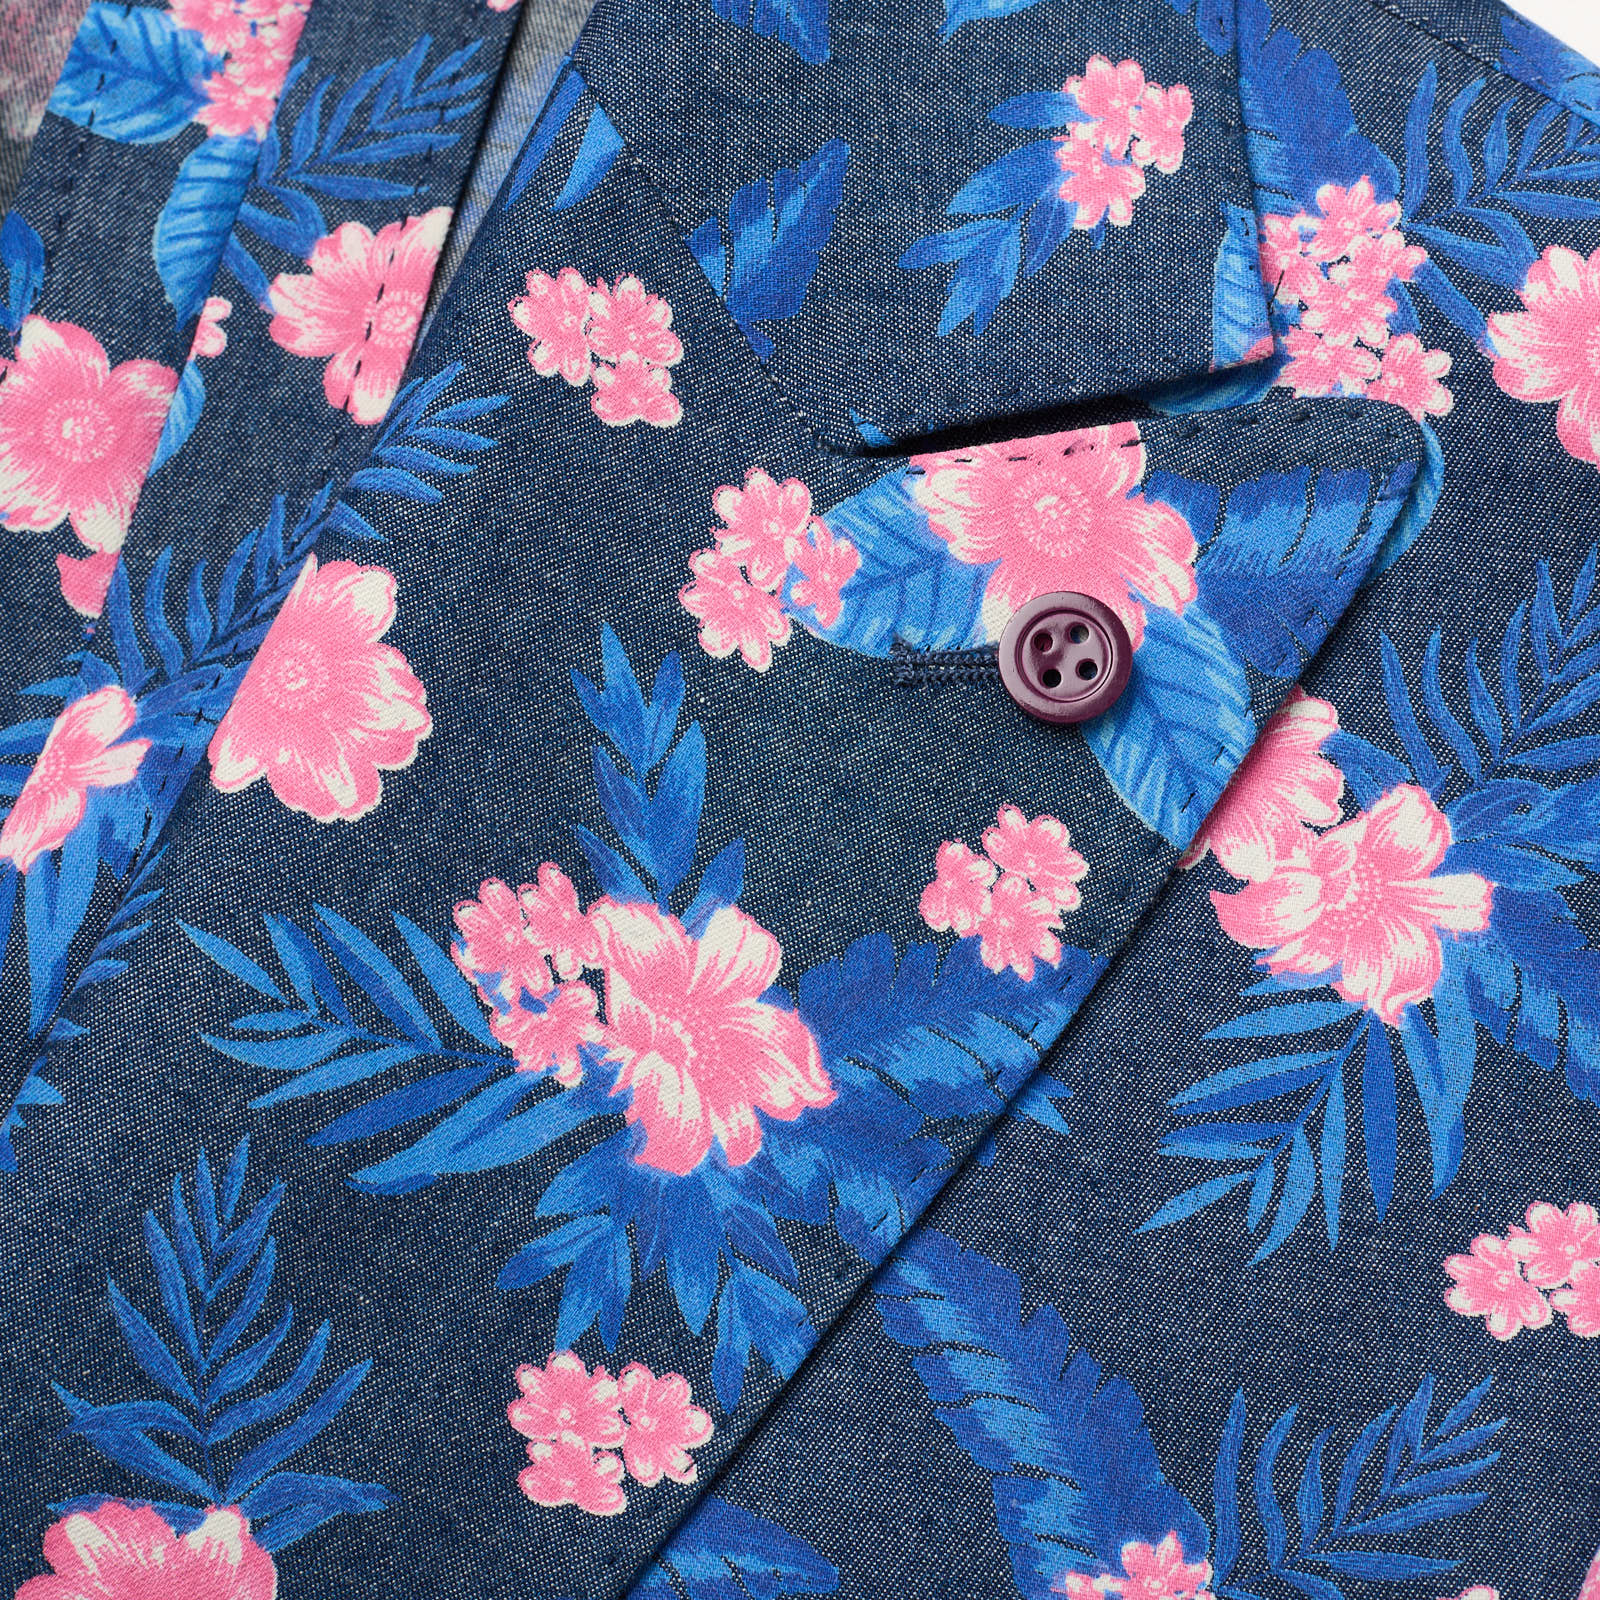 SARTORIA PARTENOPEA Blue-Pink Floral Design Cotton Jacket EU 50 NEW US 40 Current Model